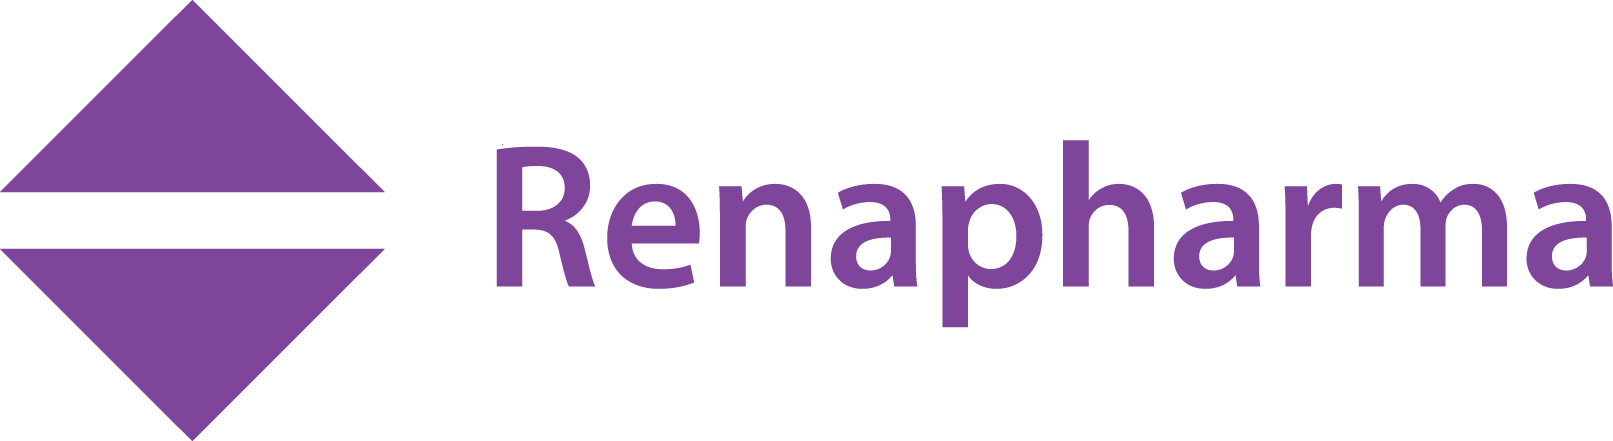 Renapharma-logo.png